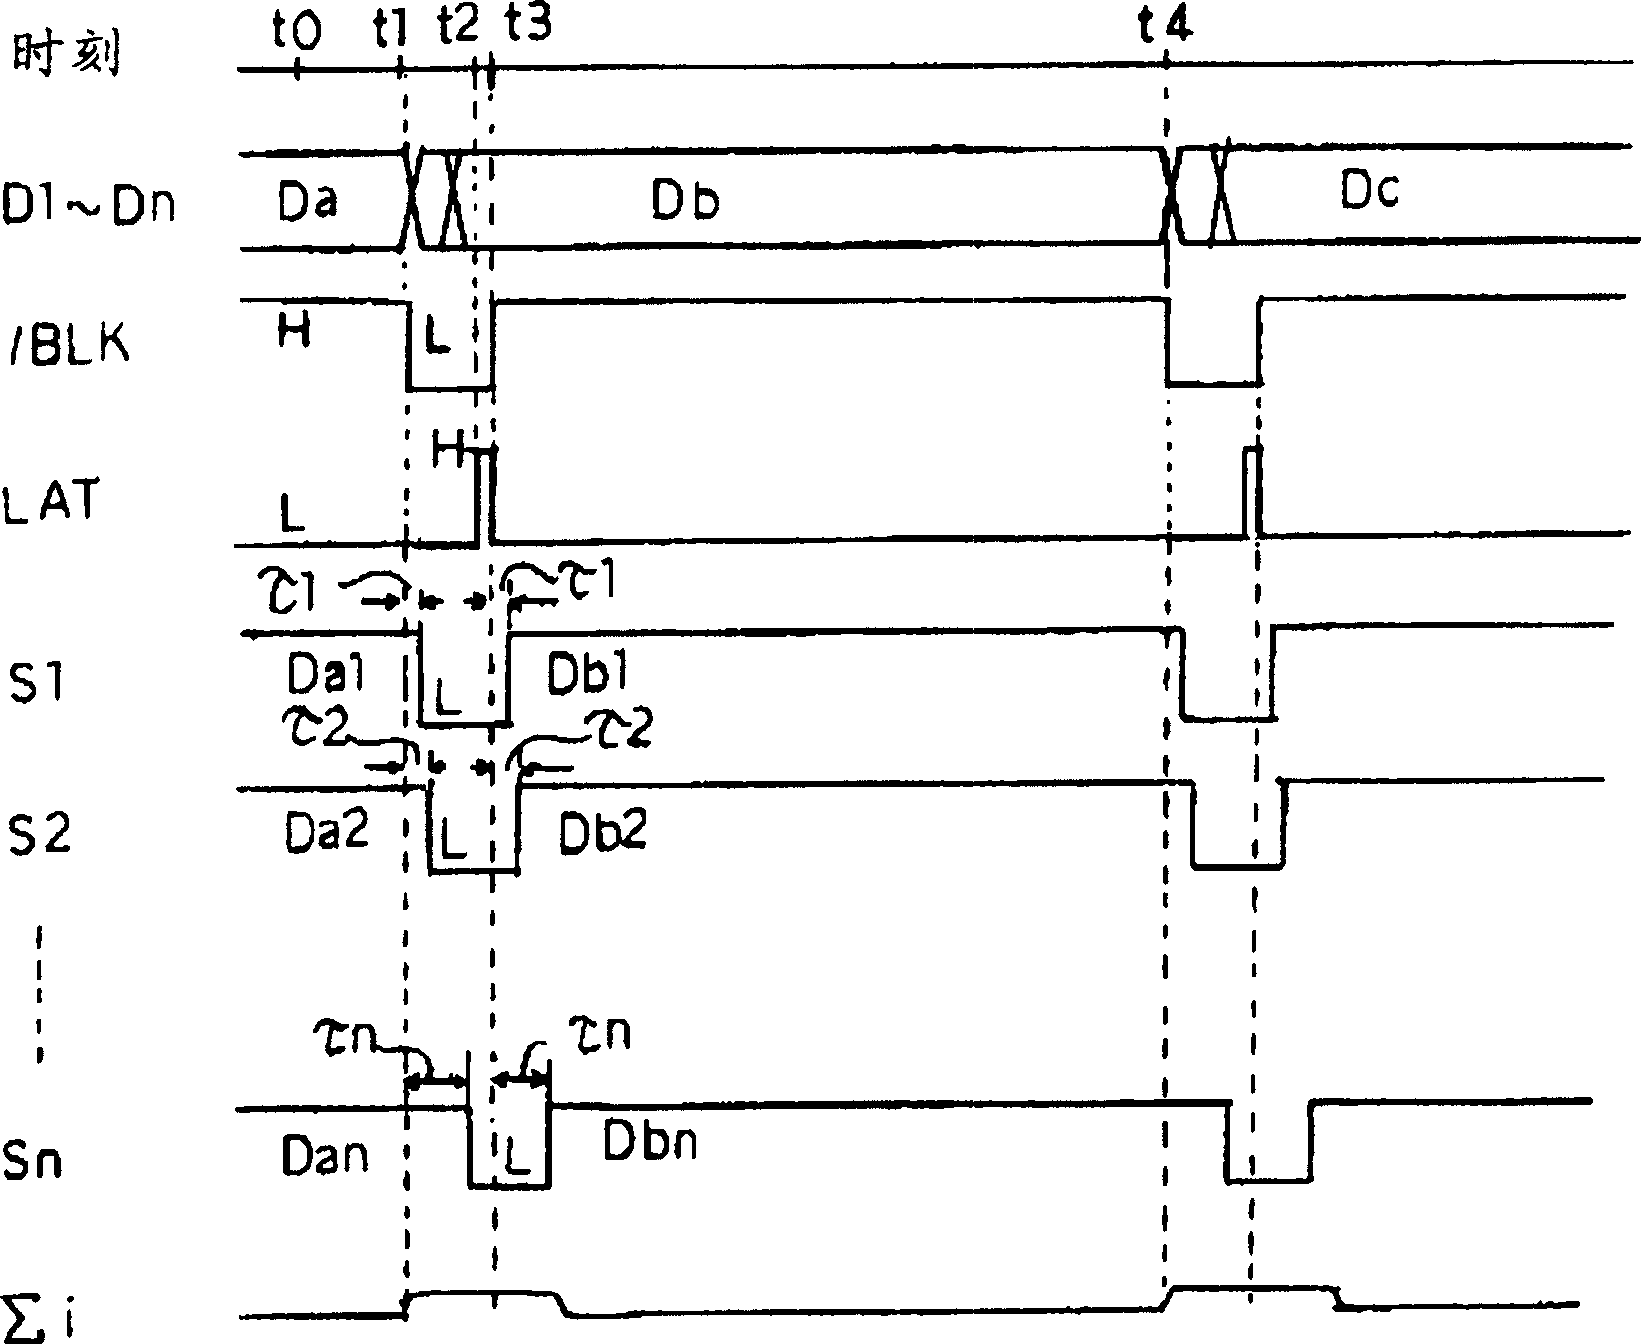 Display driver circuit